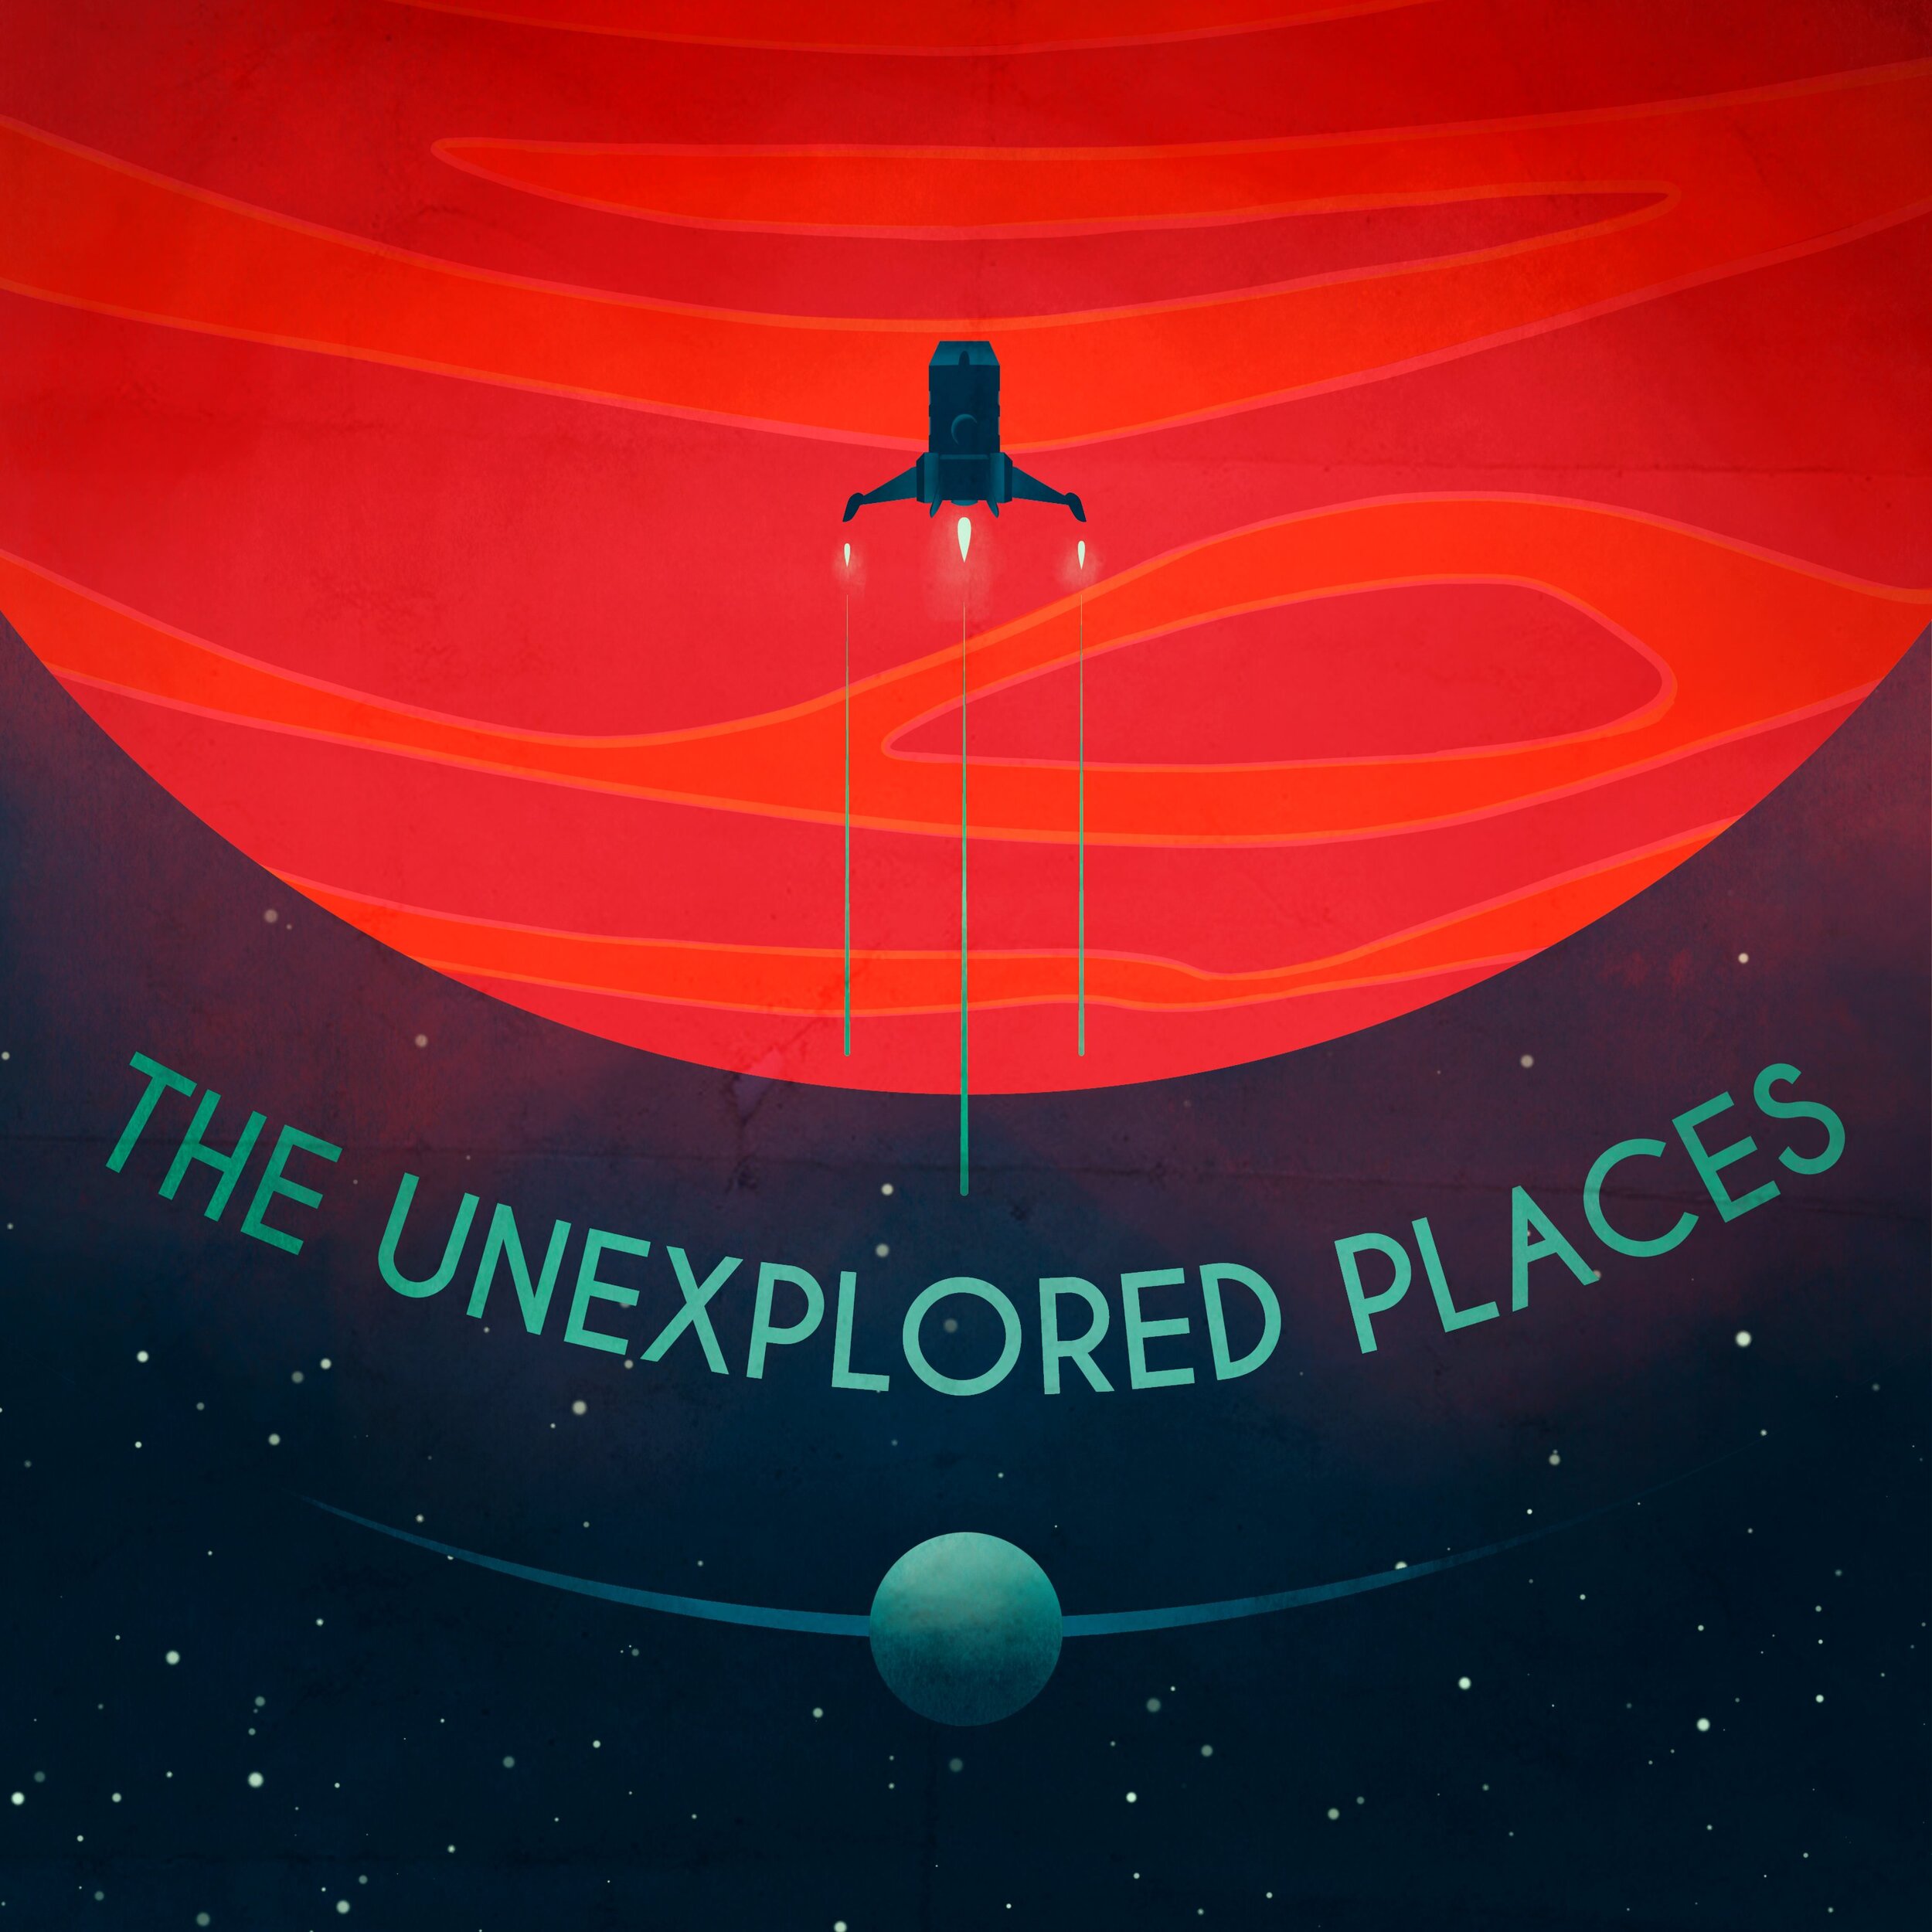   Unexplored Places  